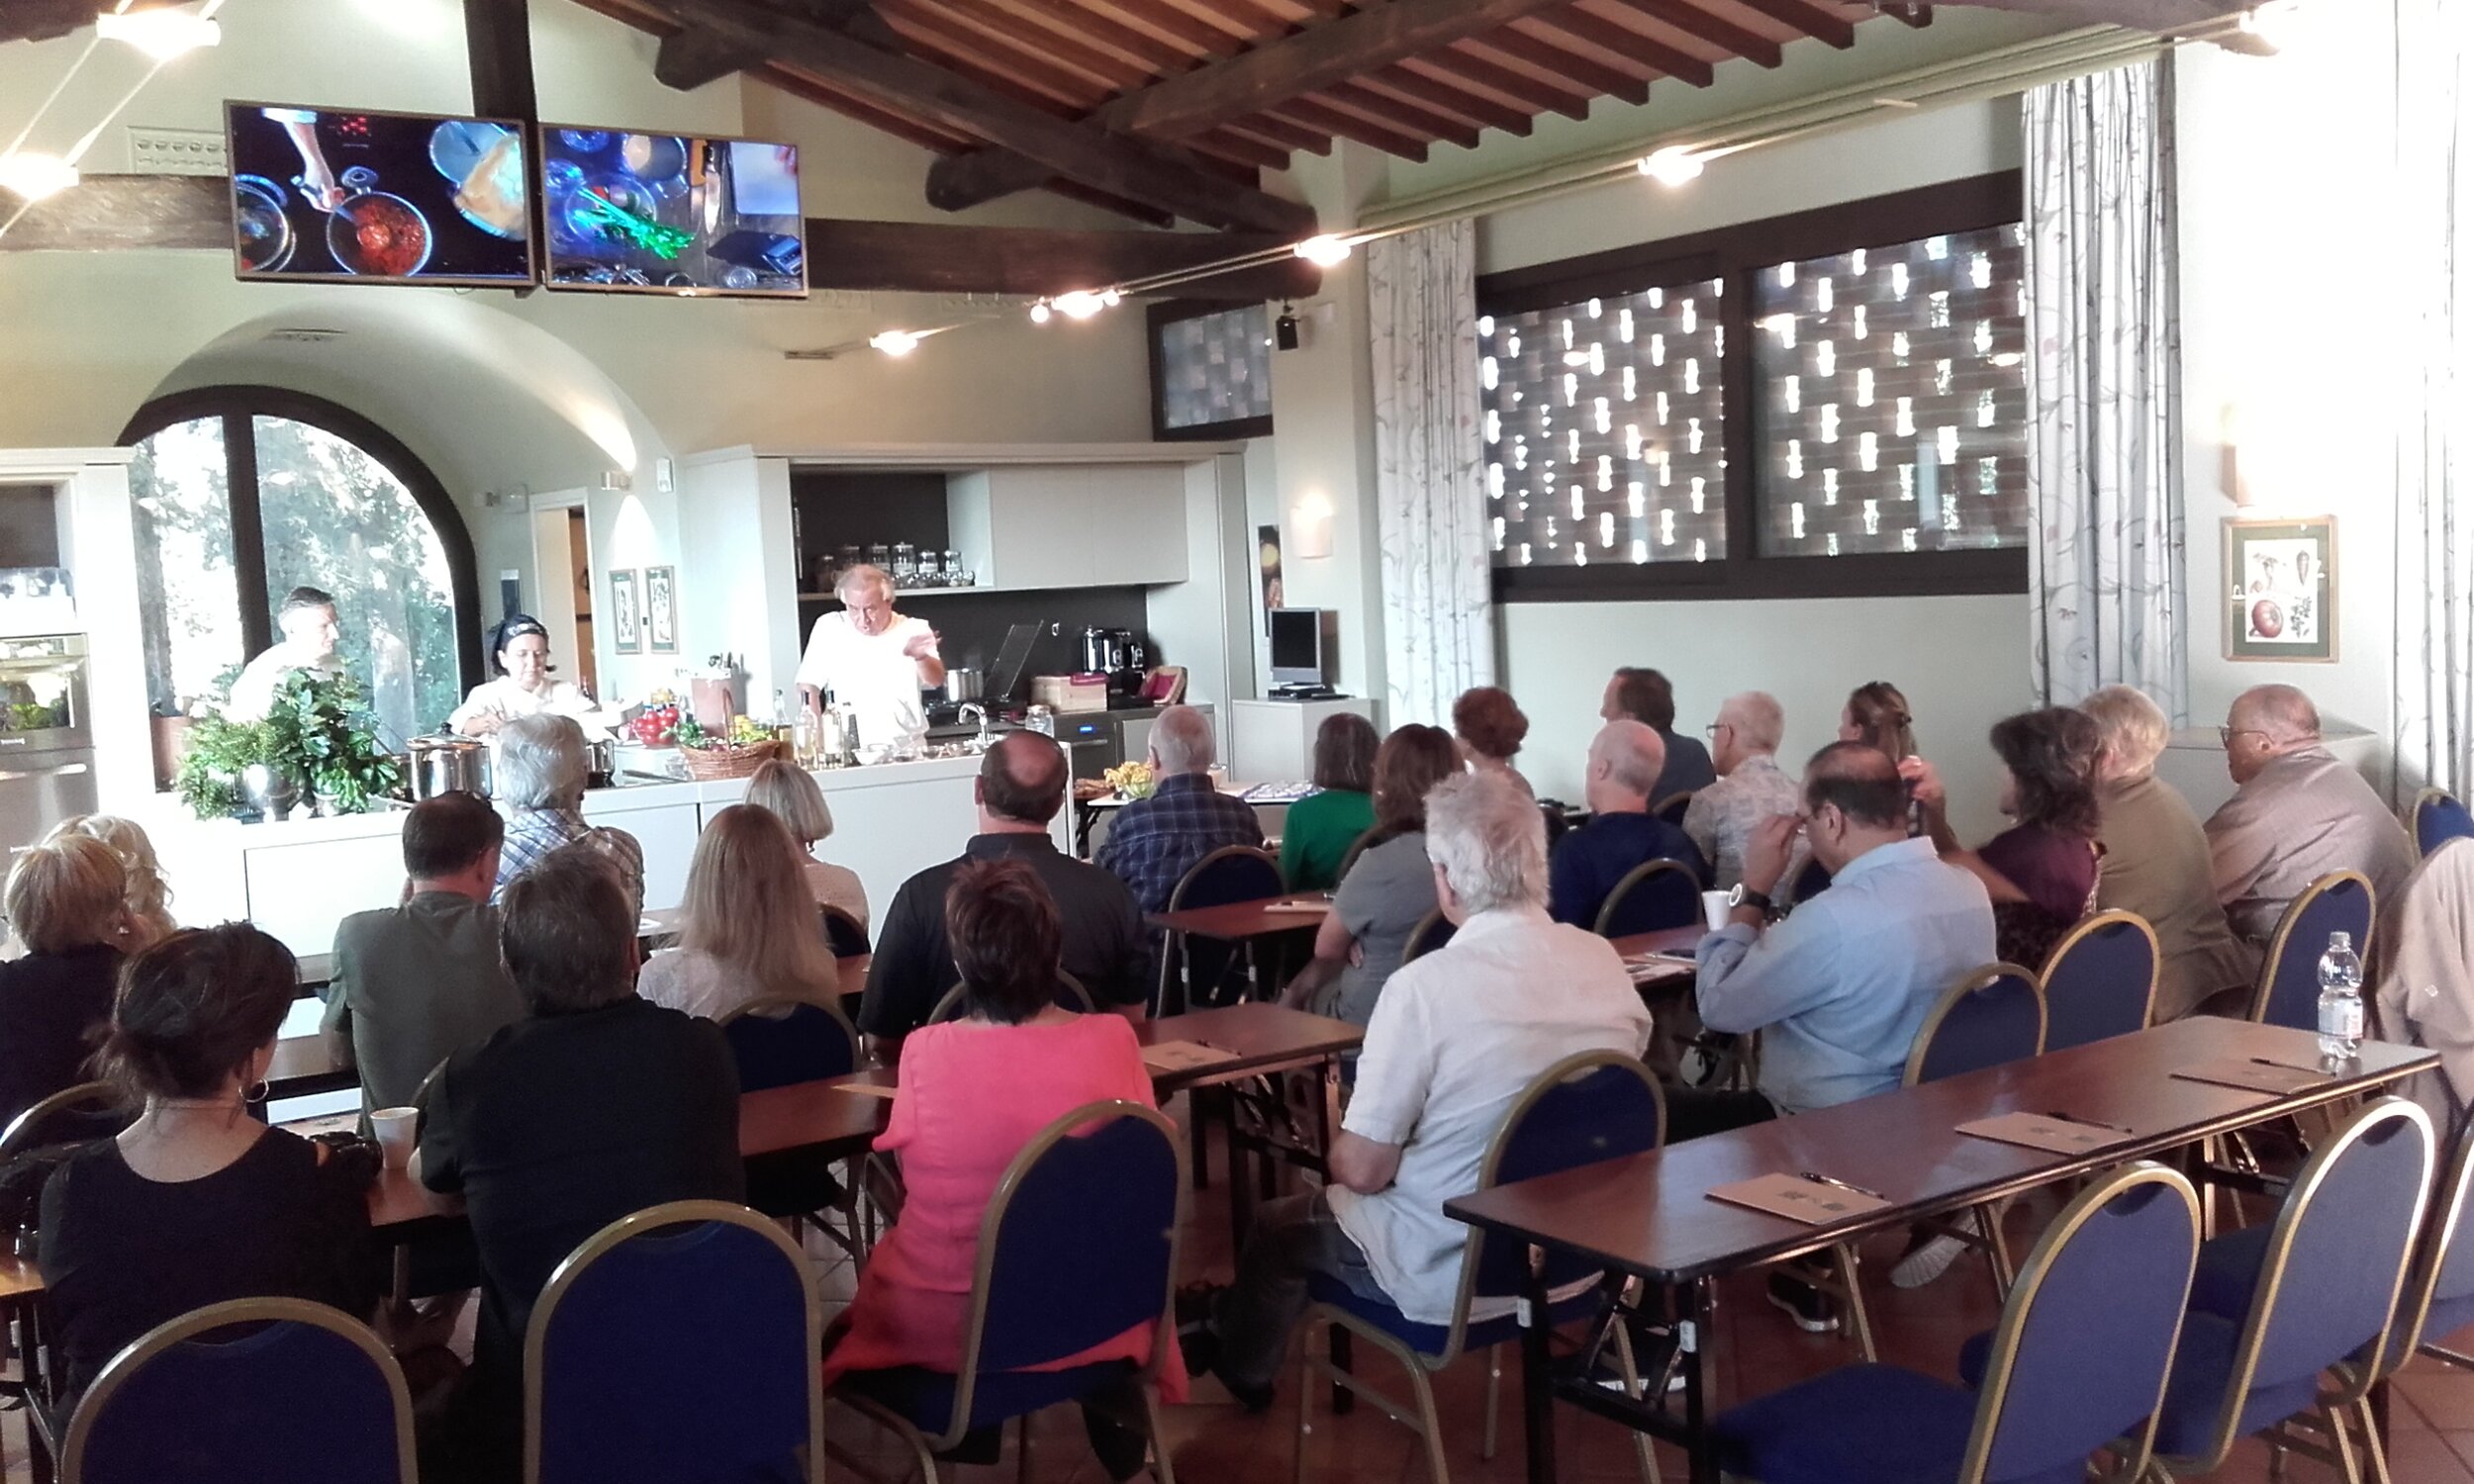 Visita alla Tenuta Antinori con un corso di cucina speciale ed un pranzo tipico toscano